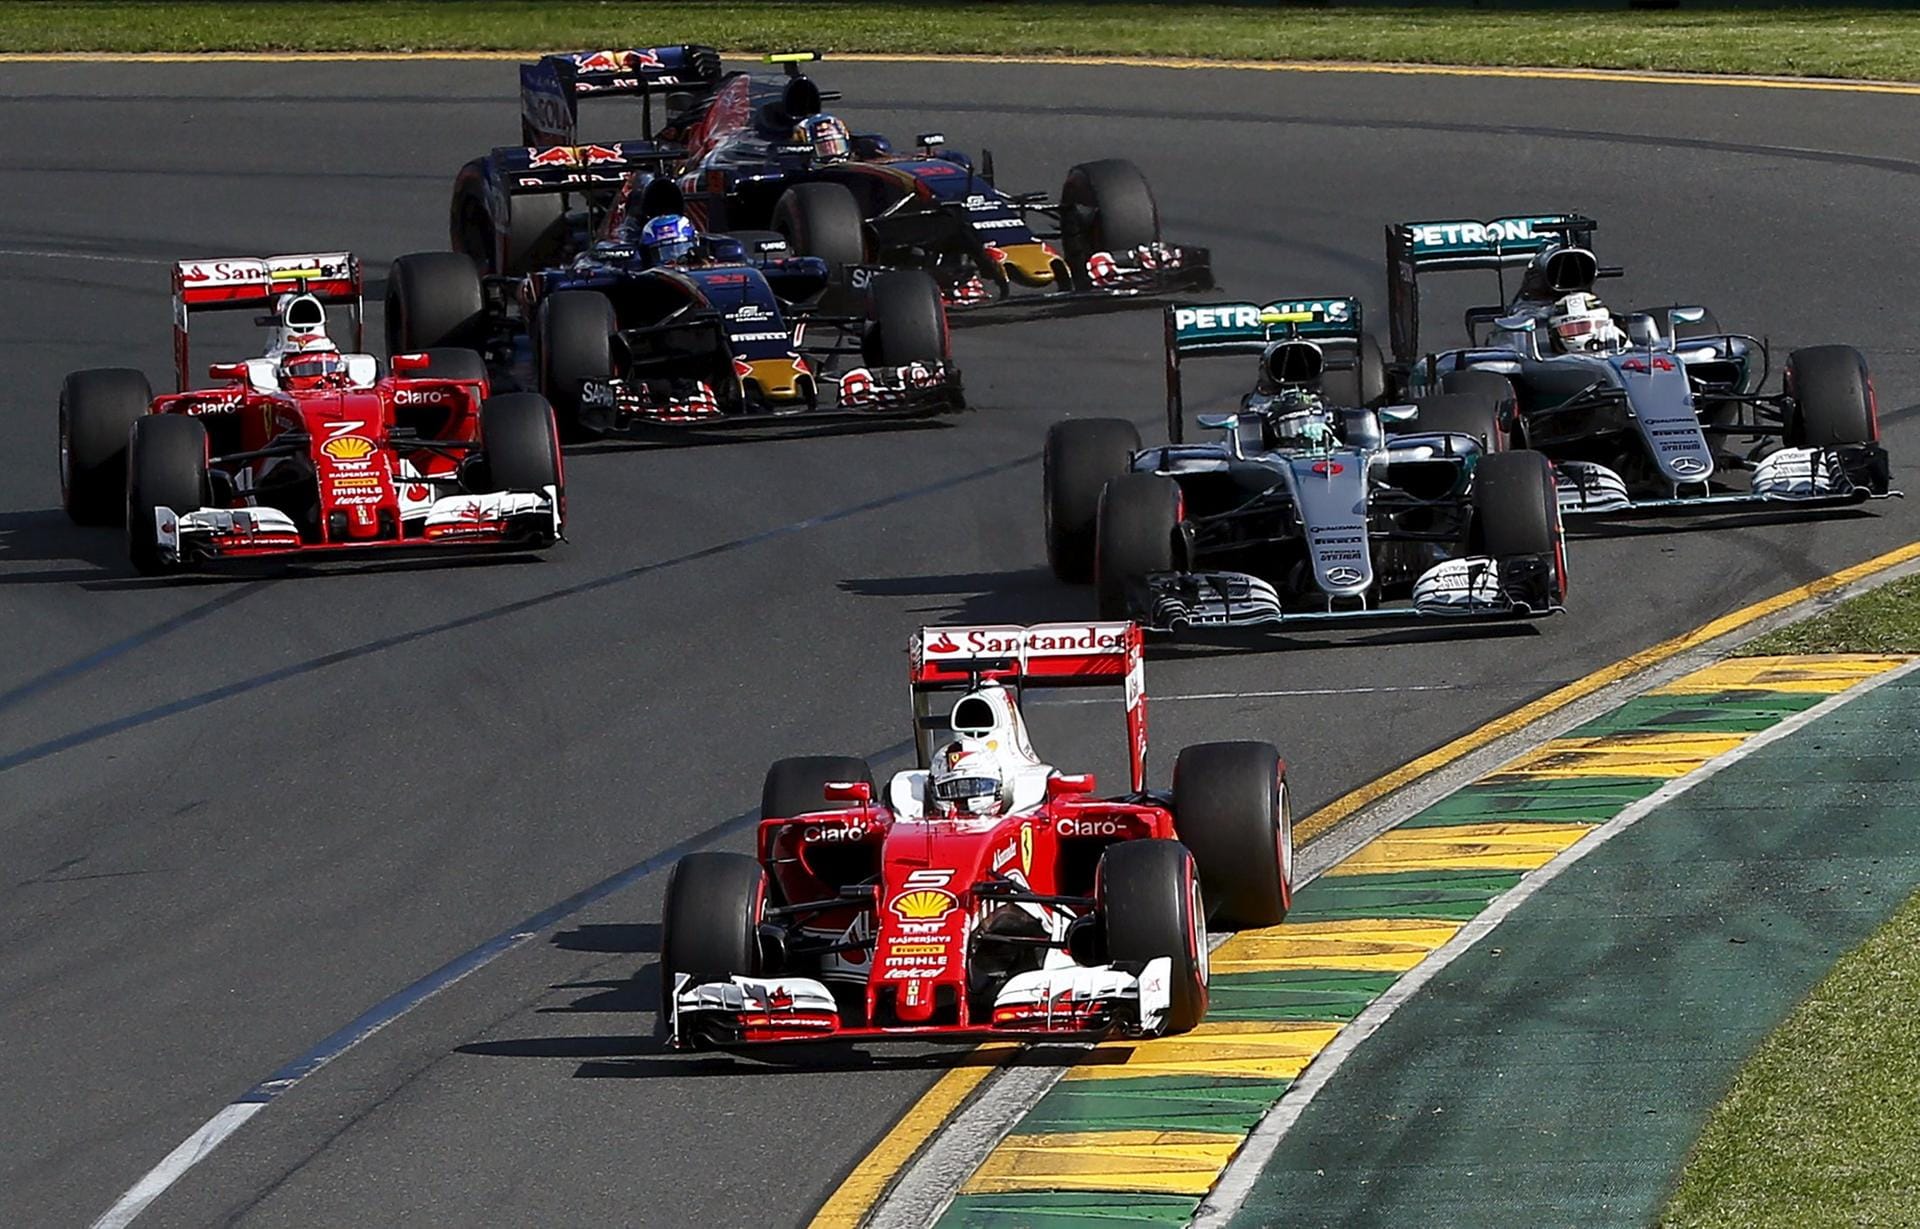 Kurve eins nach dem Start in Melbourne: Vettel führt, Räikkönen drückt sich den Mercedes vorbei.